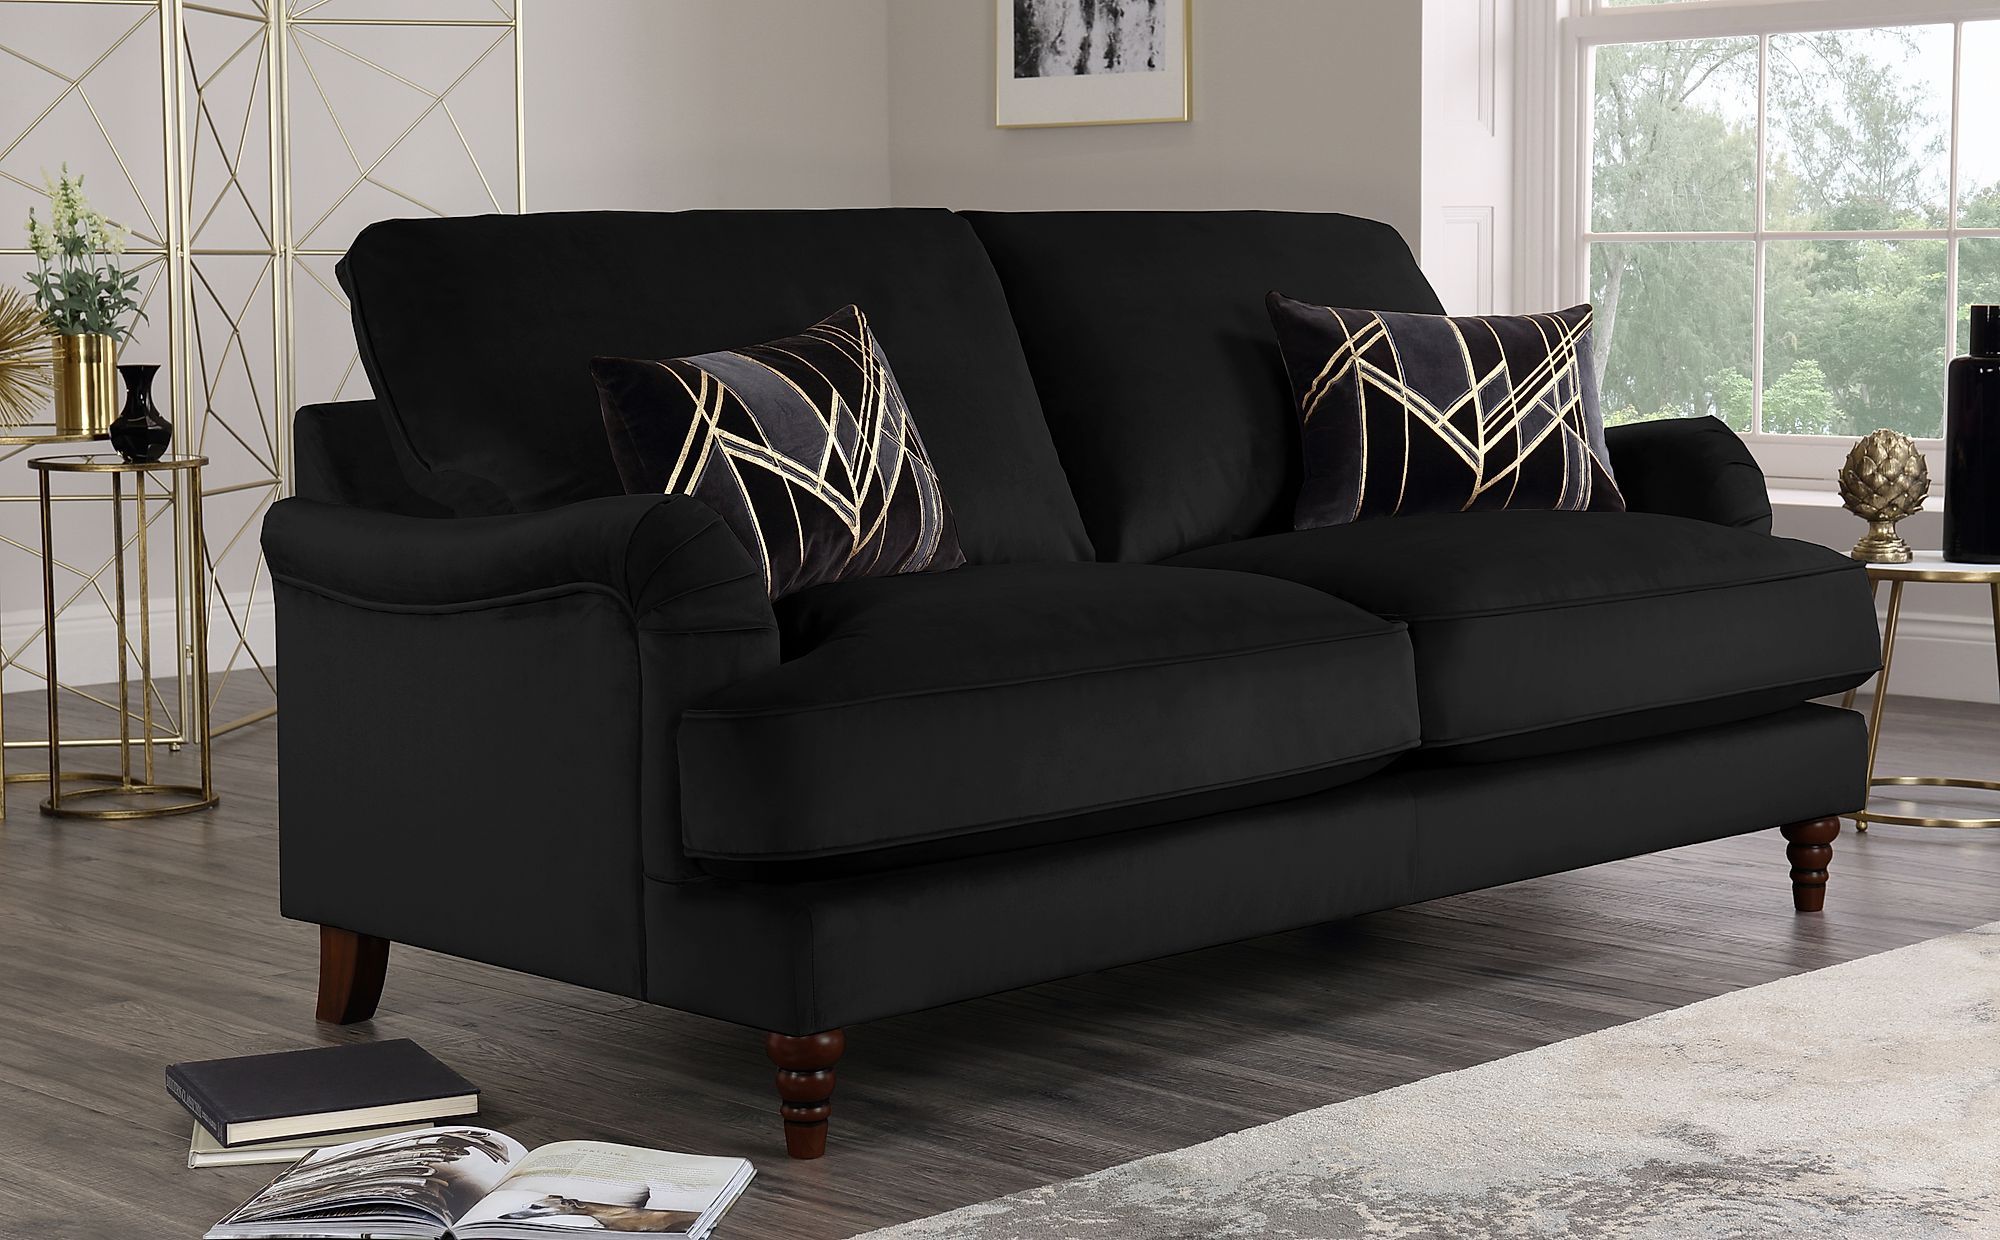 Charleston Black Velvet 3 Seater Sofa | Furniture Choice For Sofas In Black (View 10 of 20)